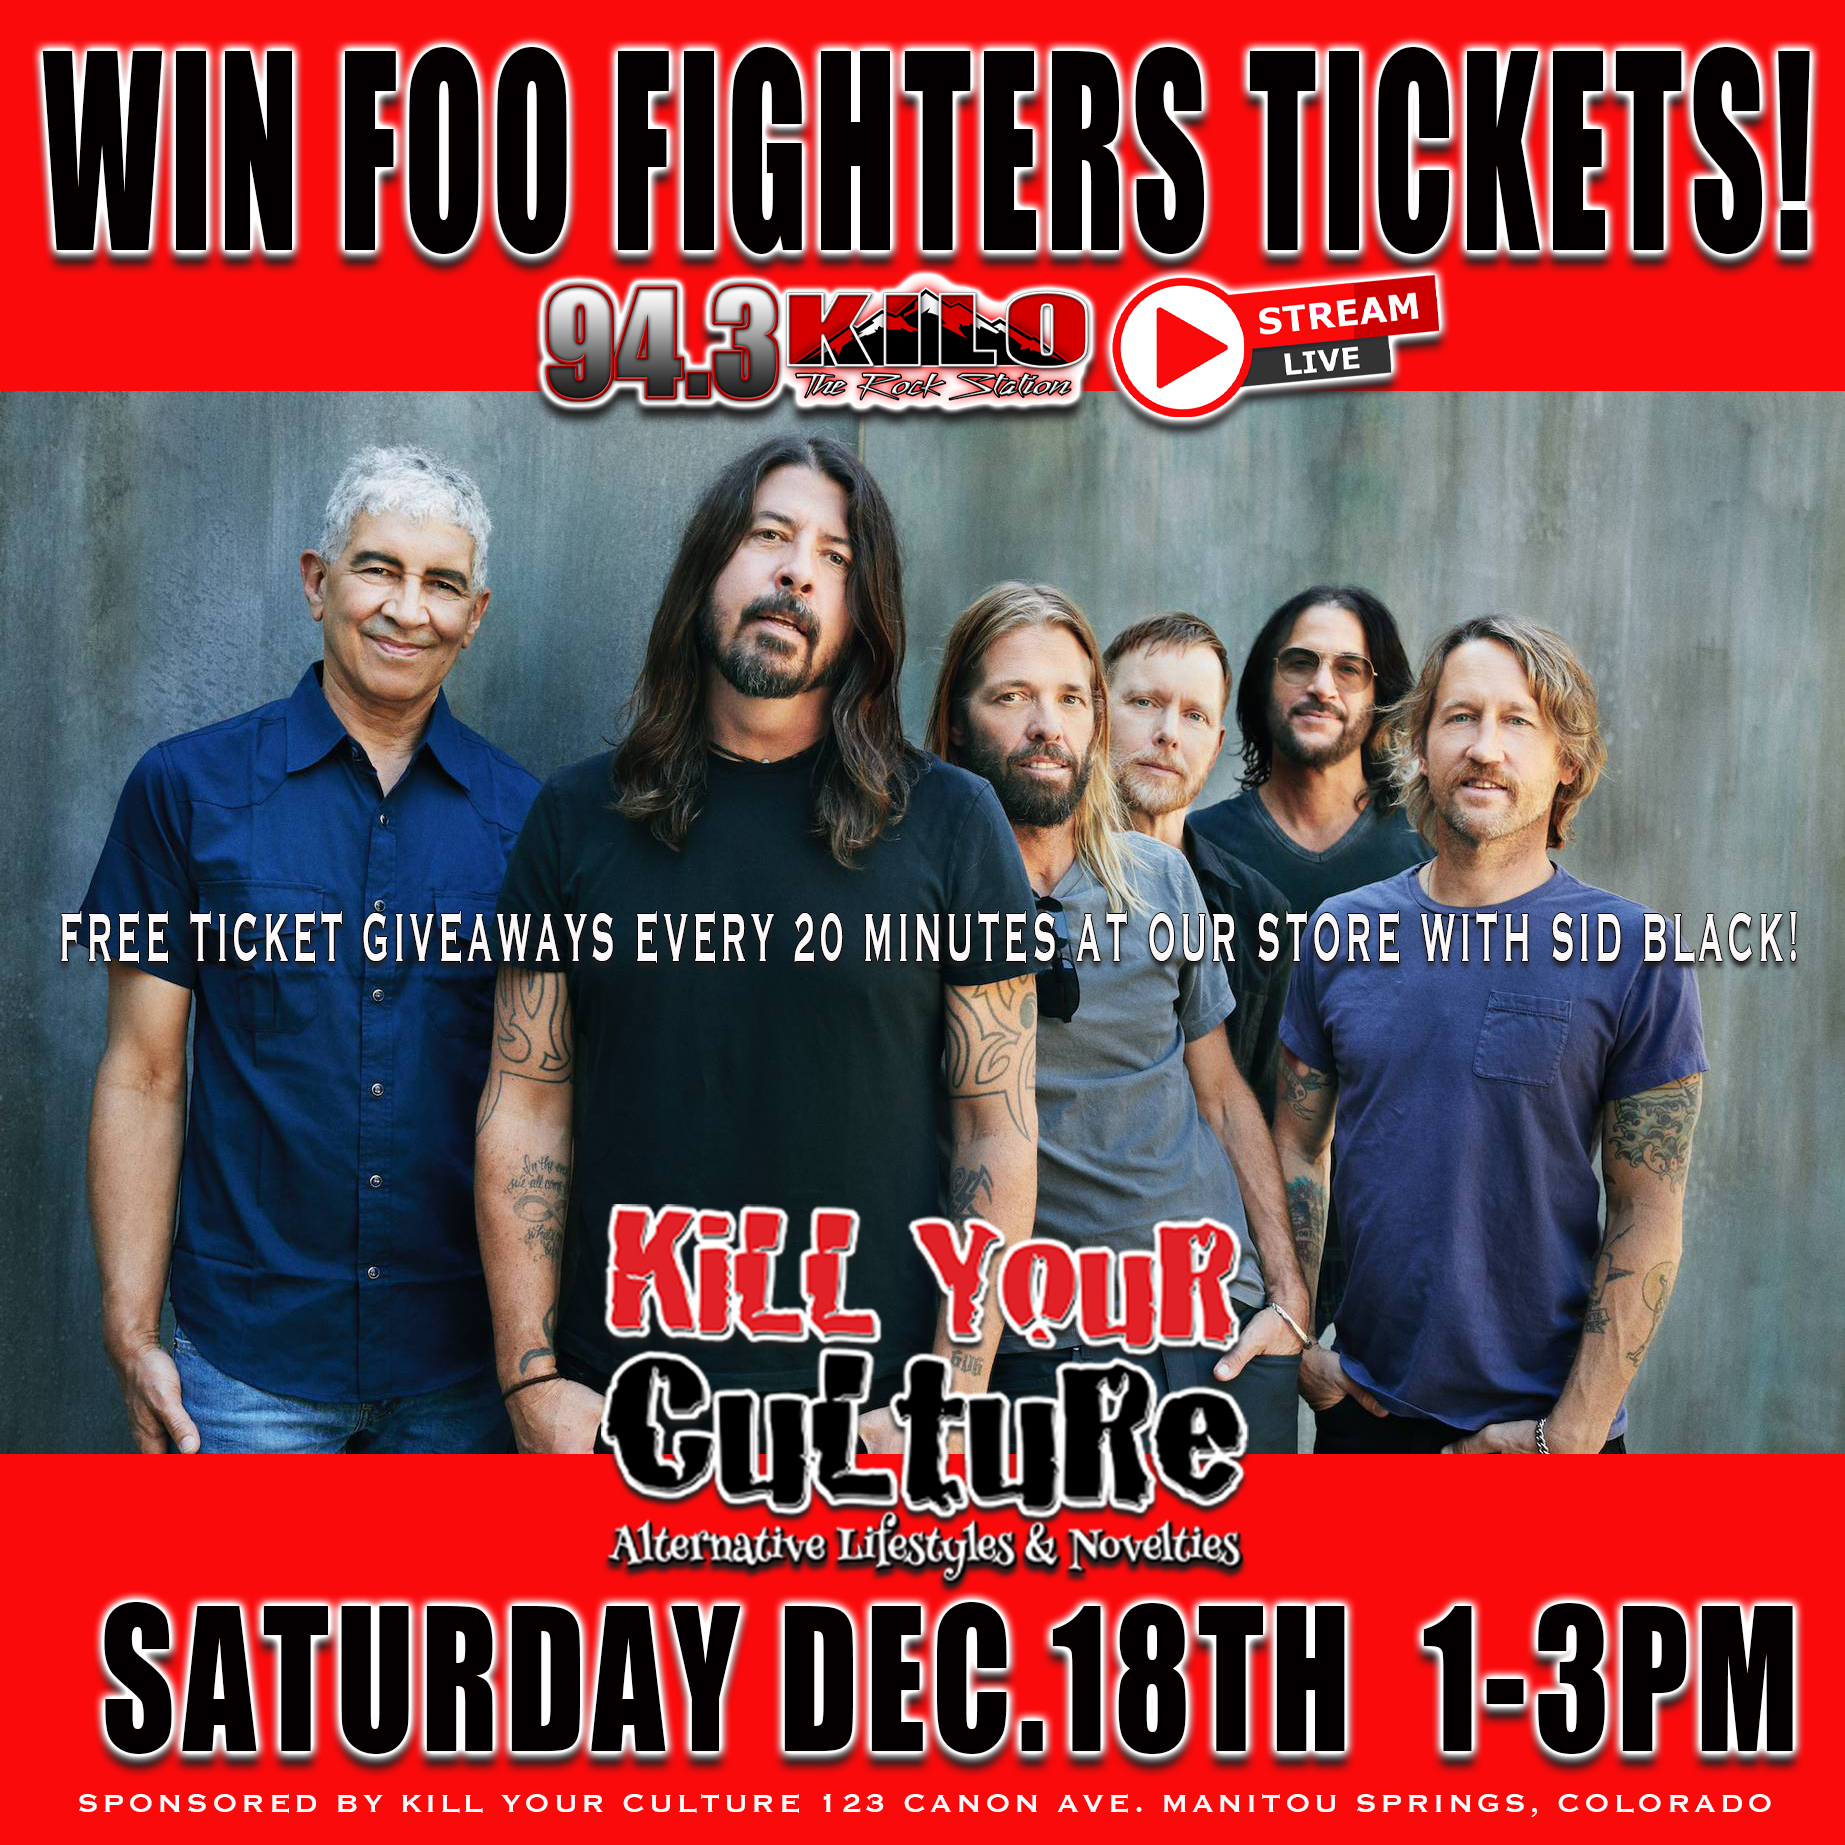 Win Foo Fighters Tickets